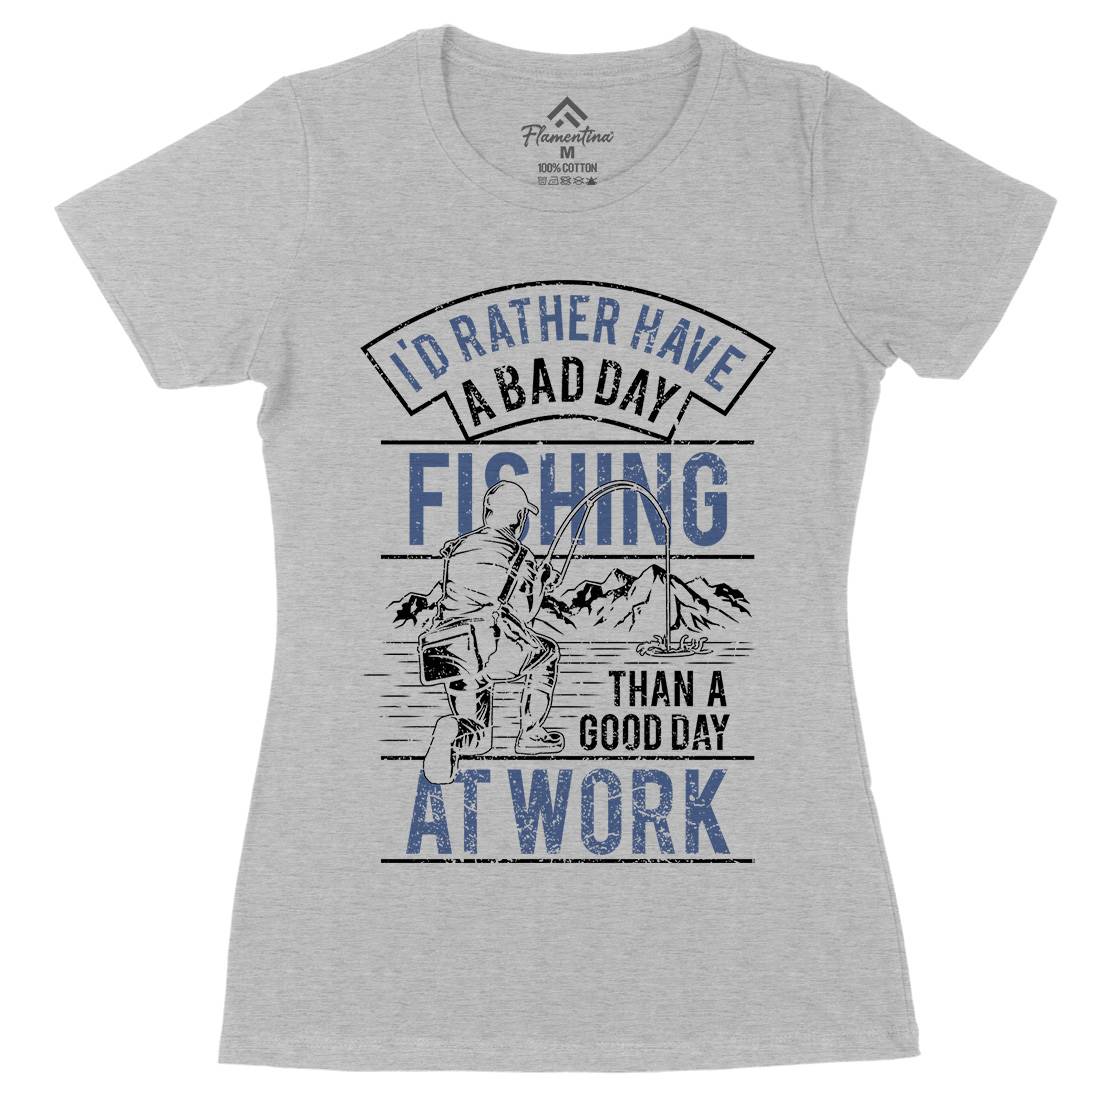 Gear Womens Organic Crew Neck T-Shirt Fishing A660